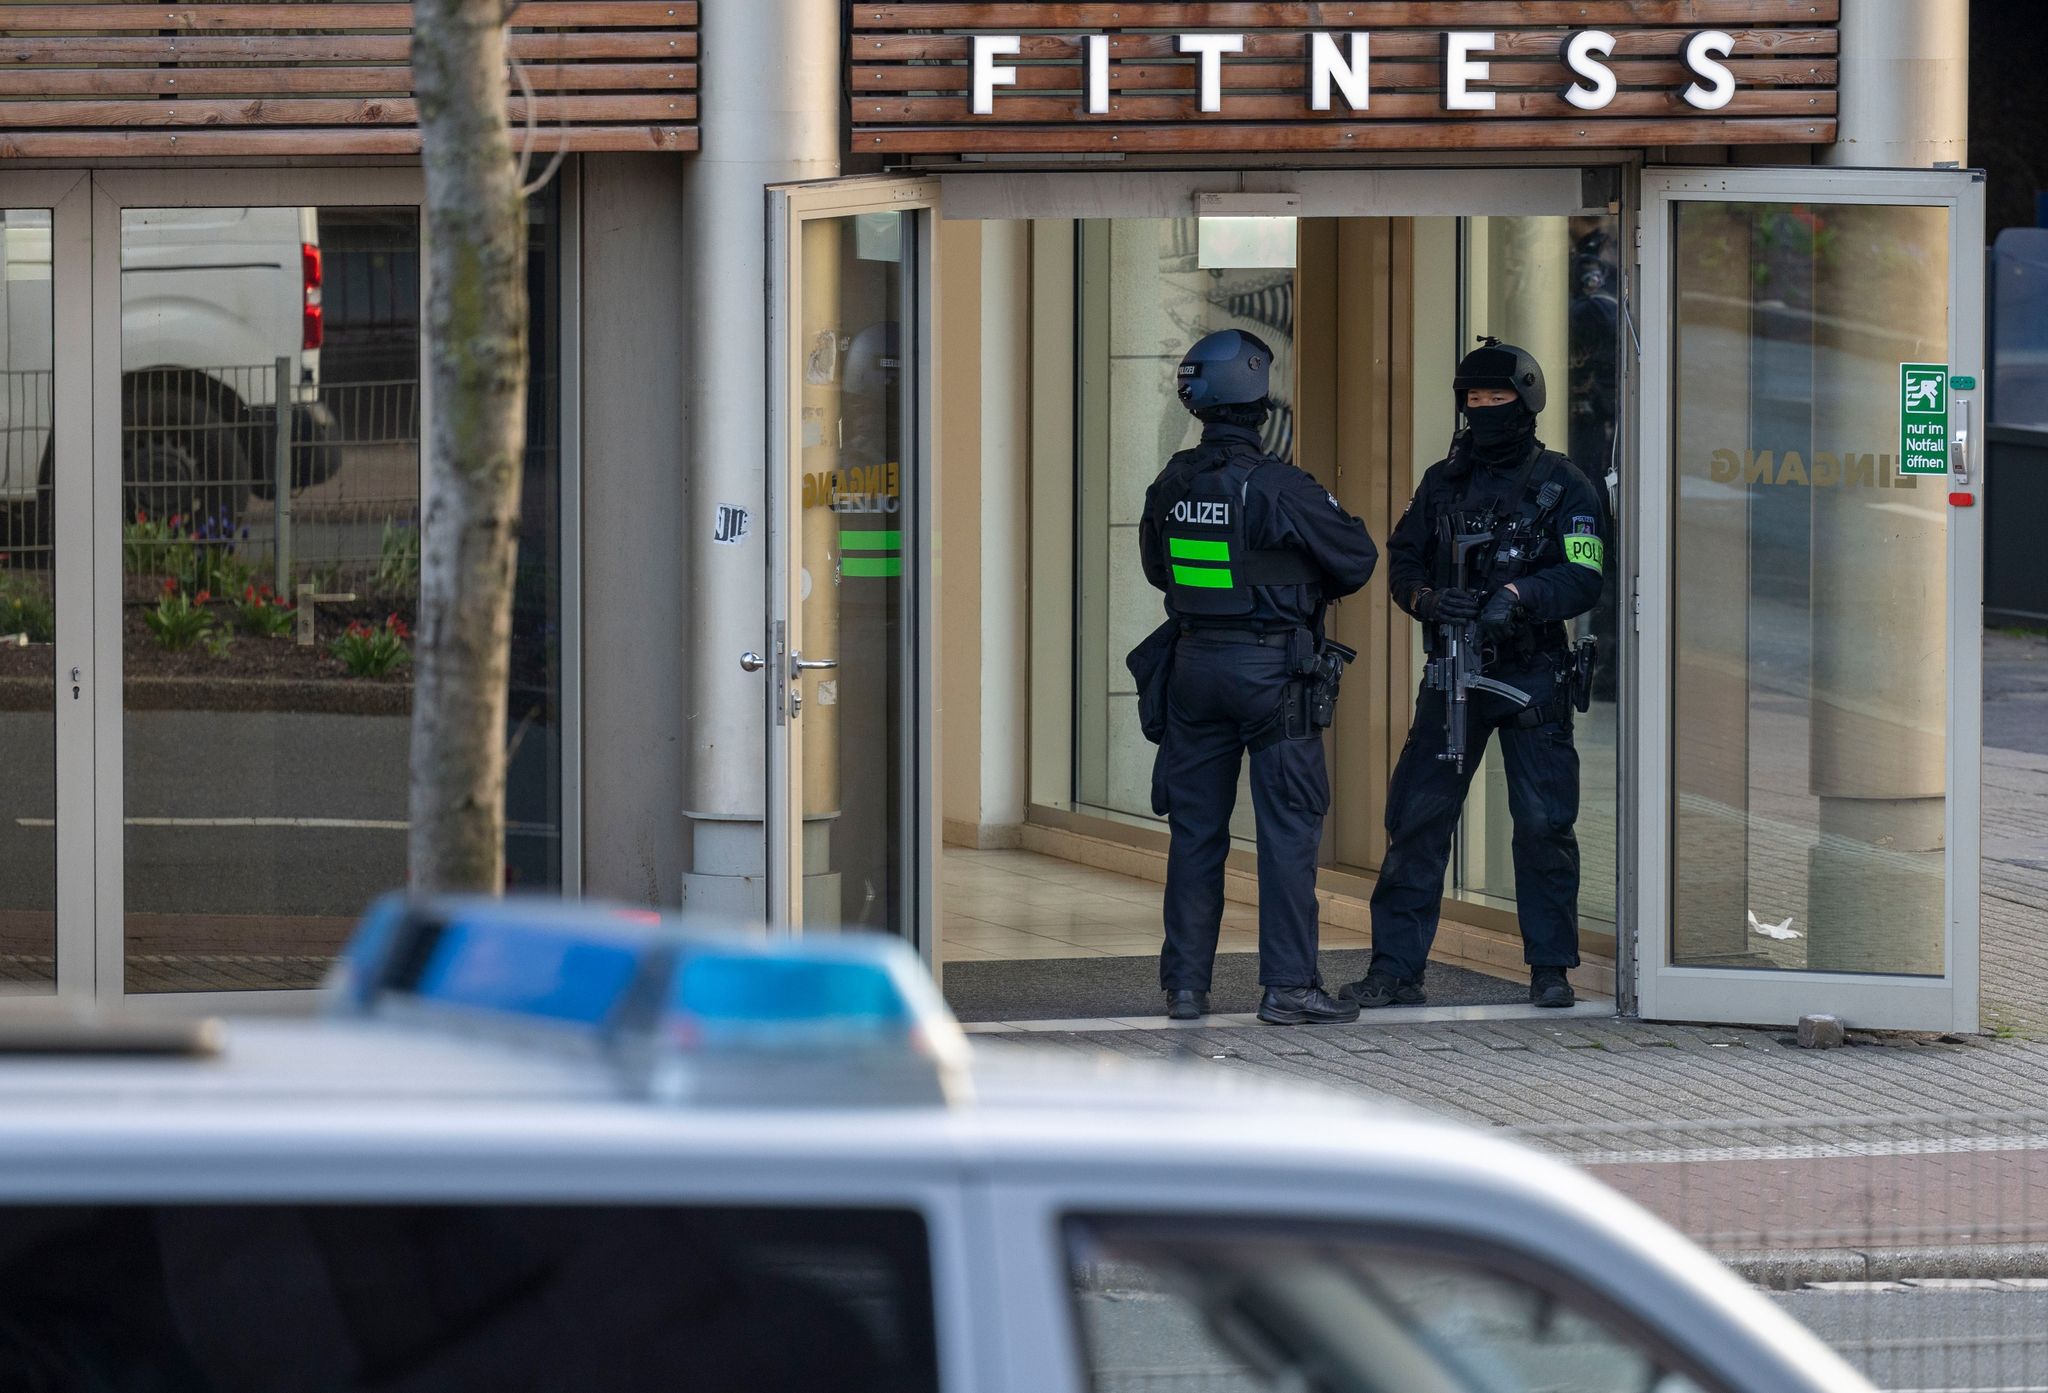 Polizisten im Einsatz: Bei einer Attacke in einem Duisburger Fitnessstudio sind am Dienstagabend mehrere Personen schwer verletzt worden. Foto: Christoph Reichwein/dpa